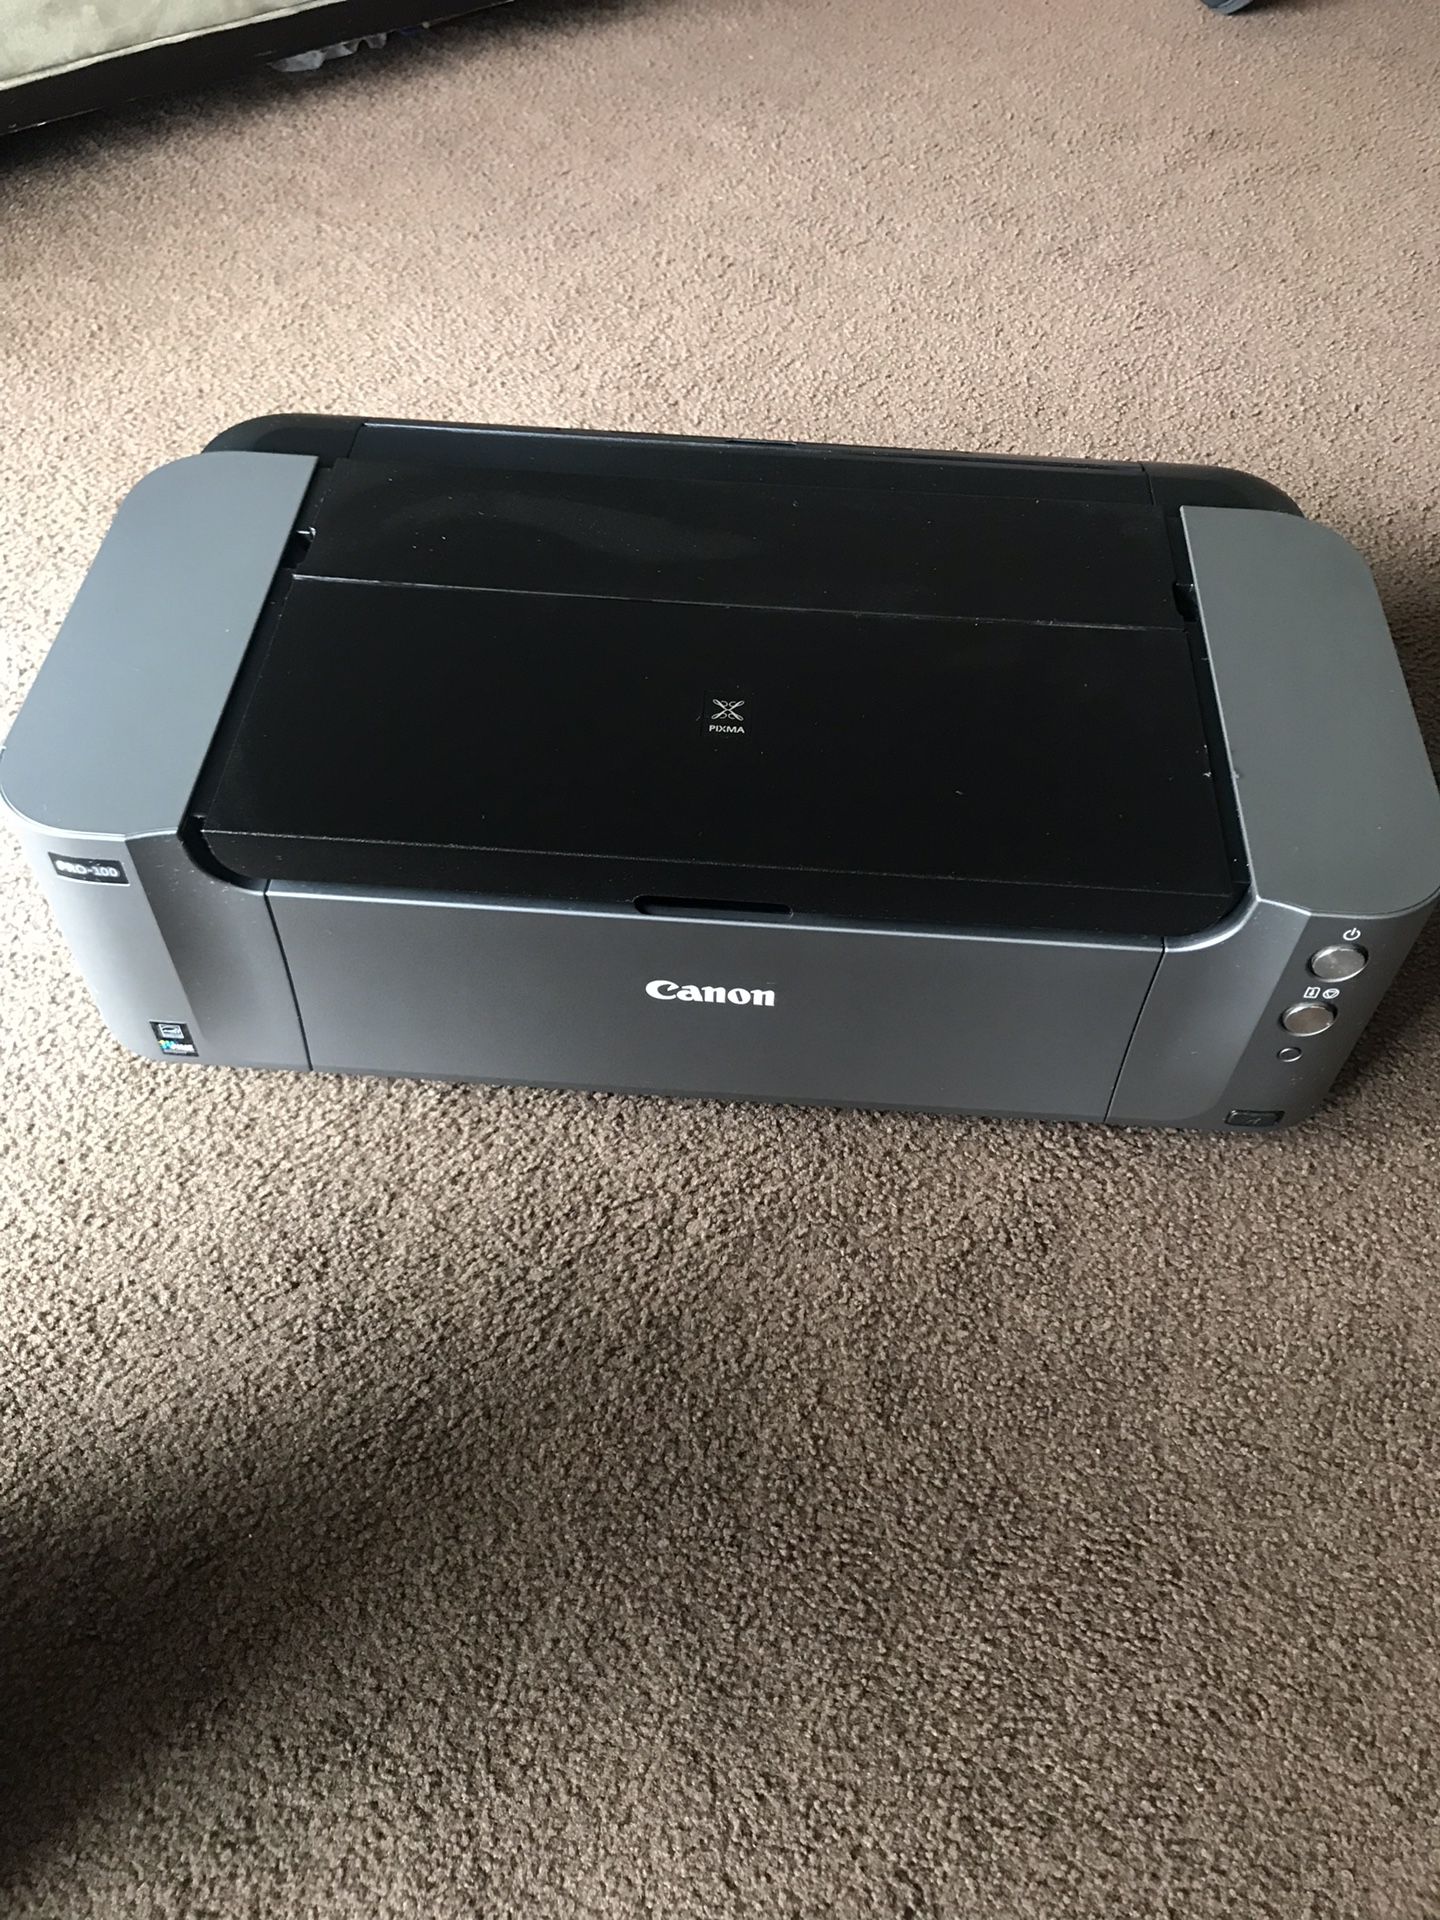 Canon PIXMA Pro- 100 professional printer